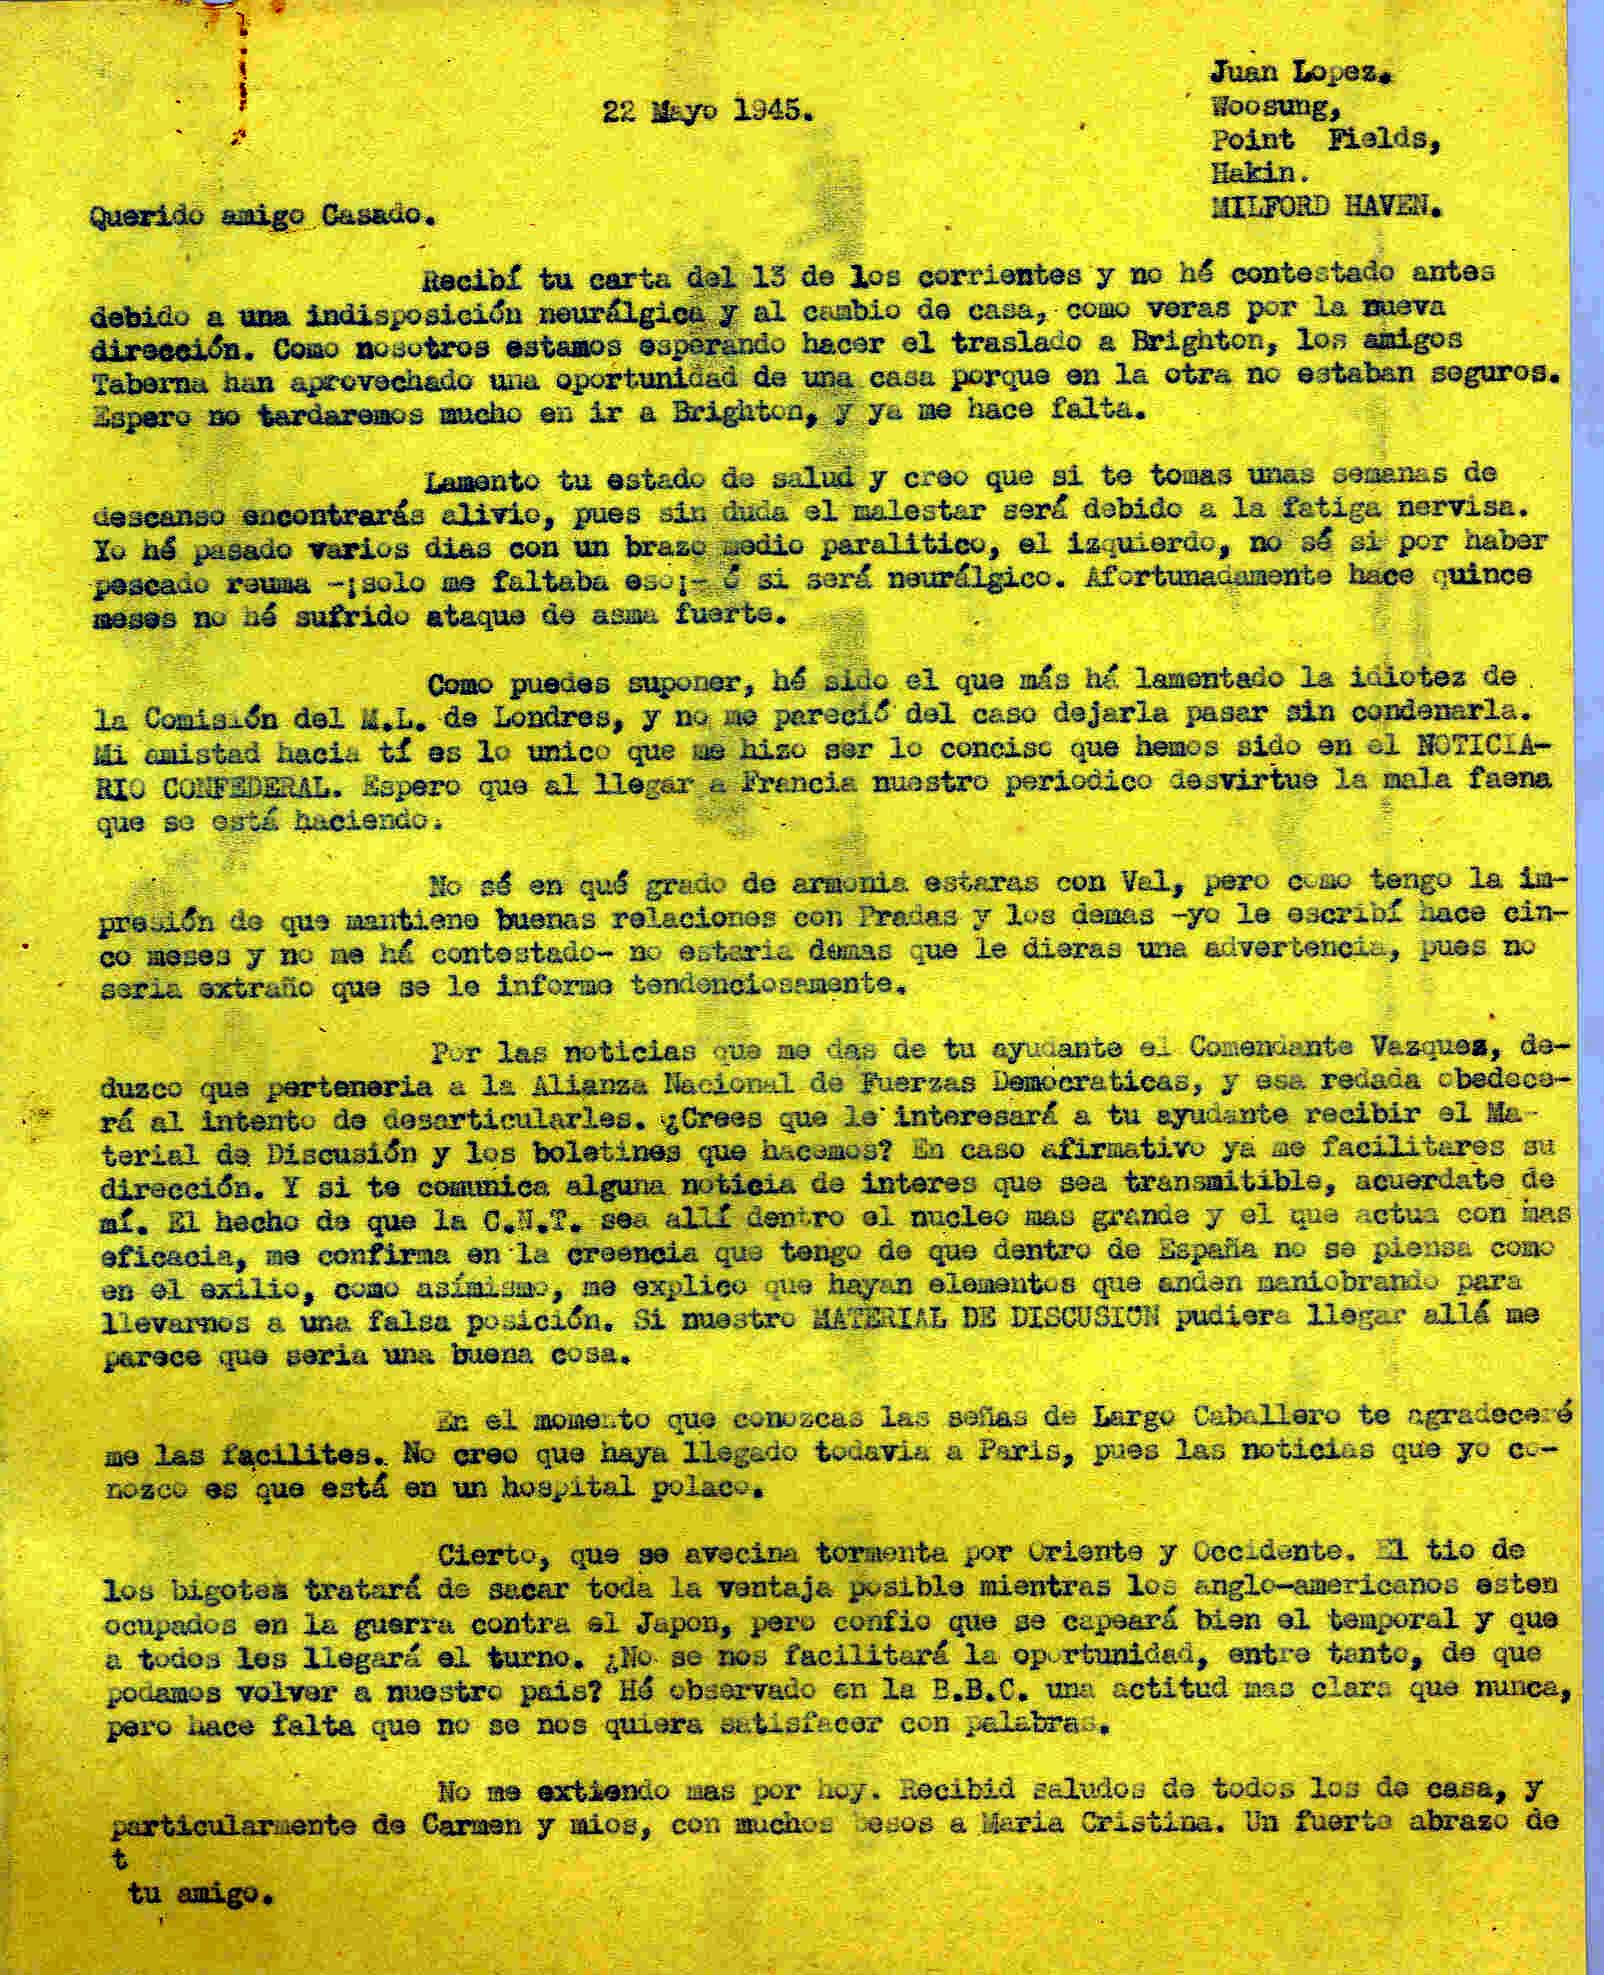 Carta a Segismundo Casado comentando si le interesa a su ayudante el comandante Vázquez Material de Discusión para enviarselo; deduce que dentro de España no se piensa como en el exilio.